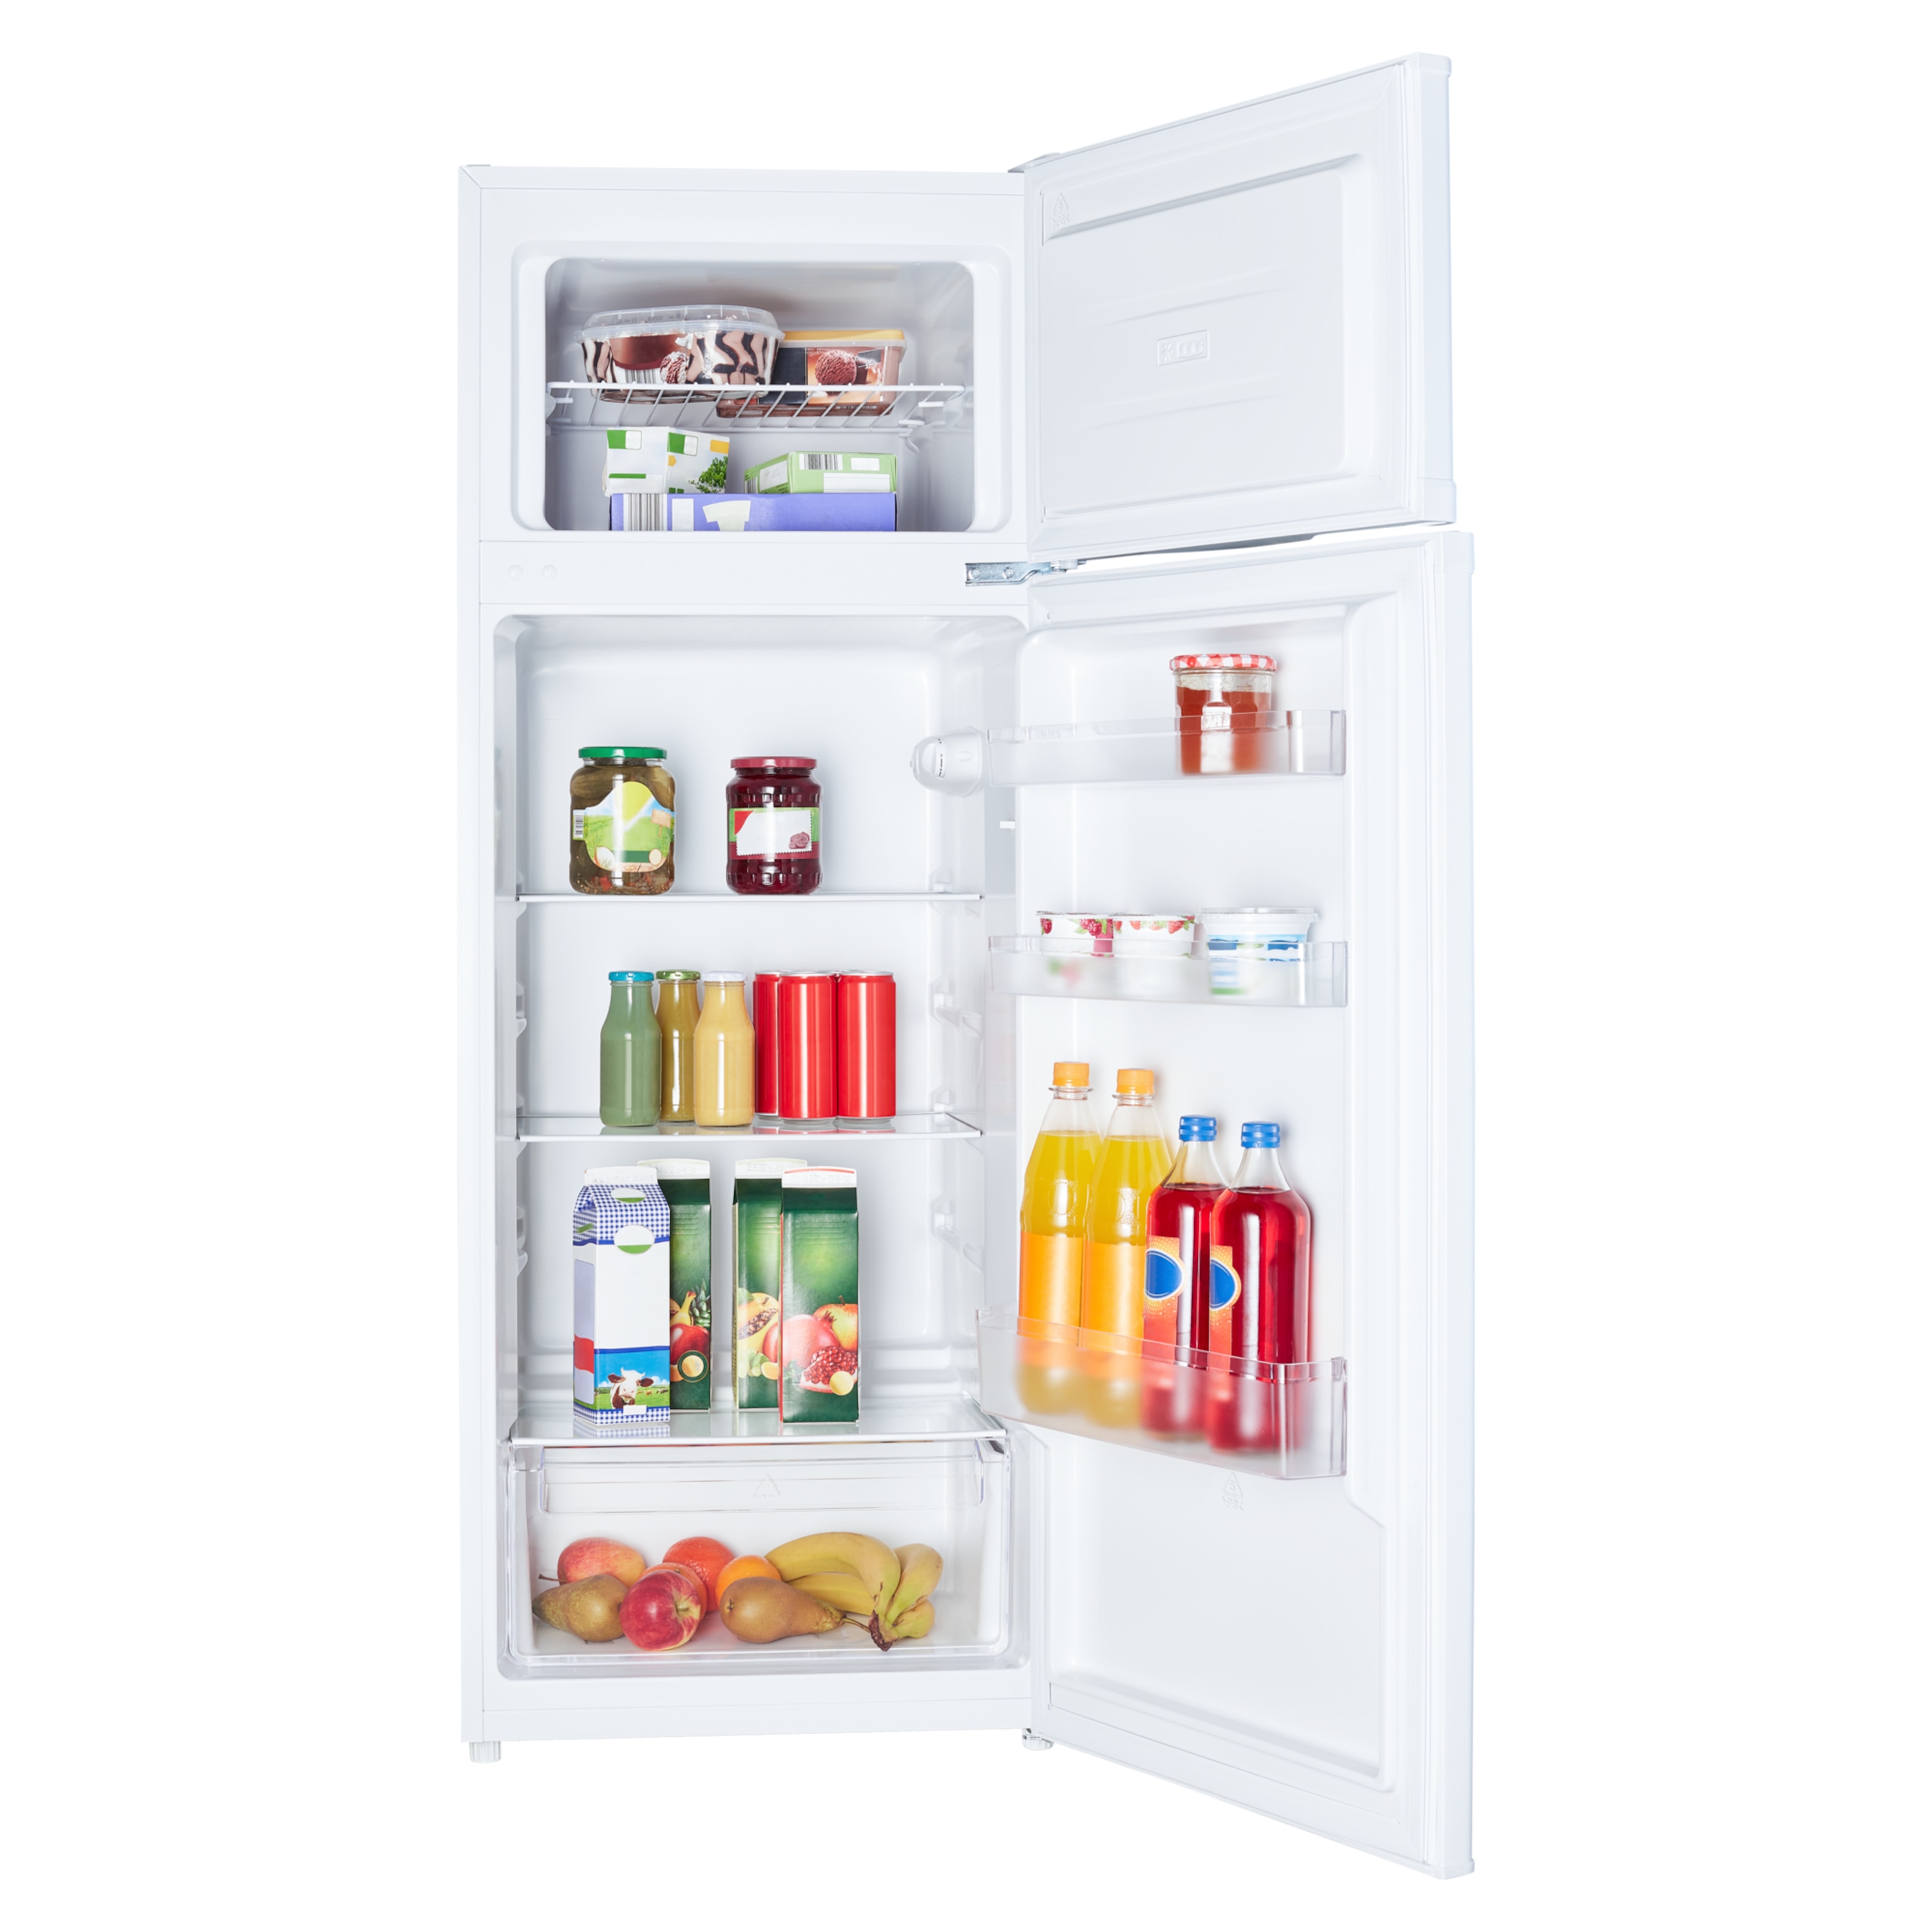 MEDION tragbare Kühlbox (Gefrierbox bis zu -18°, 30 Liter, Kühl